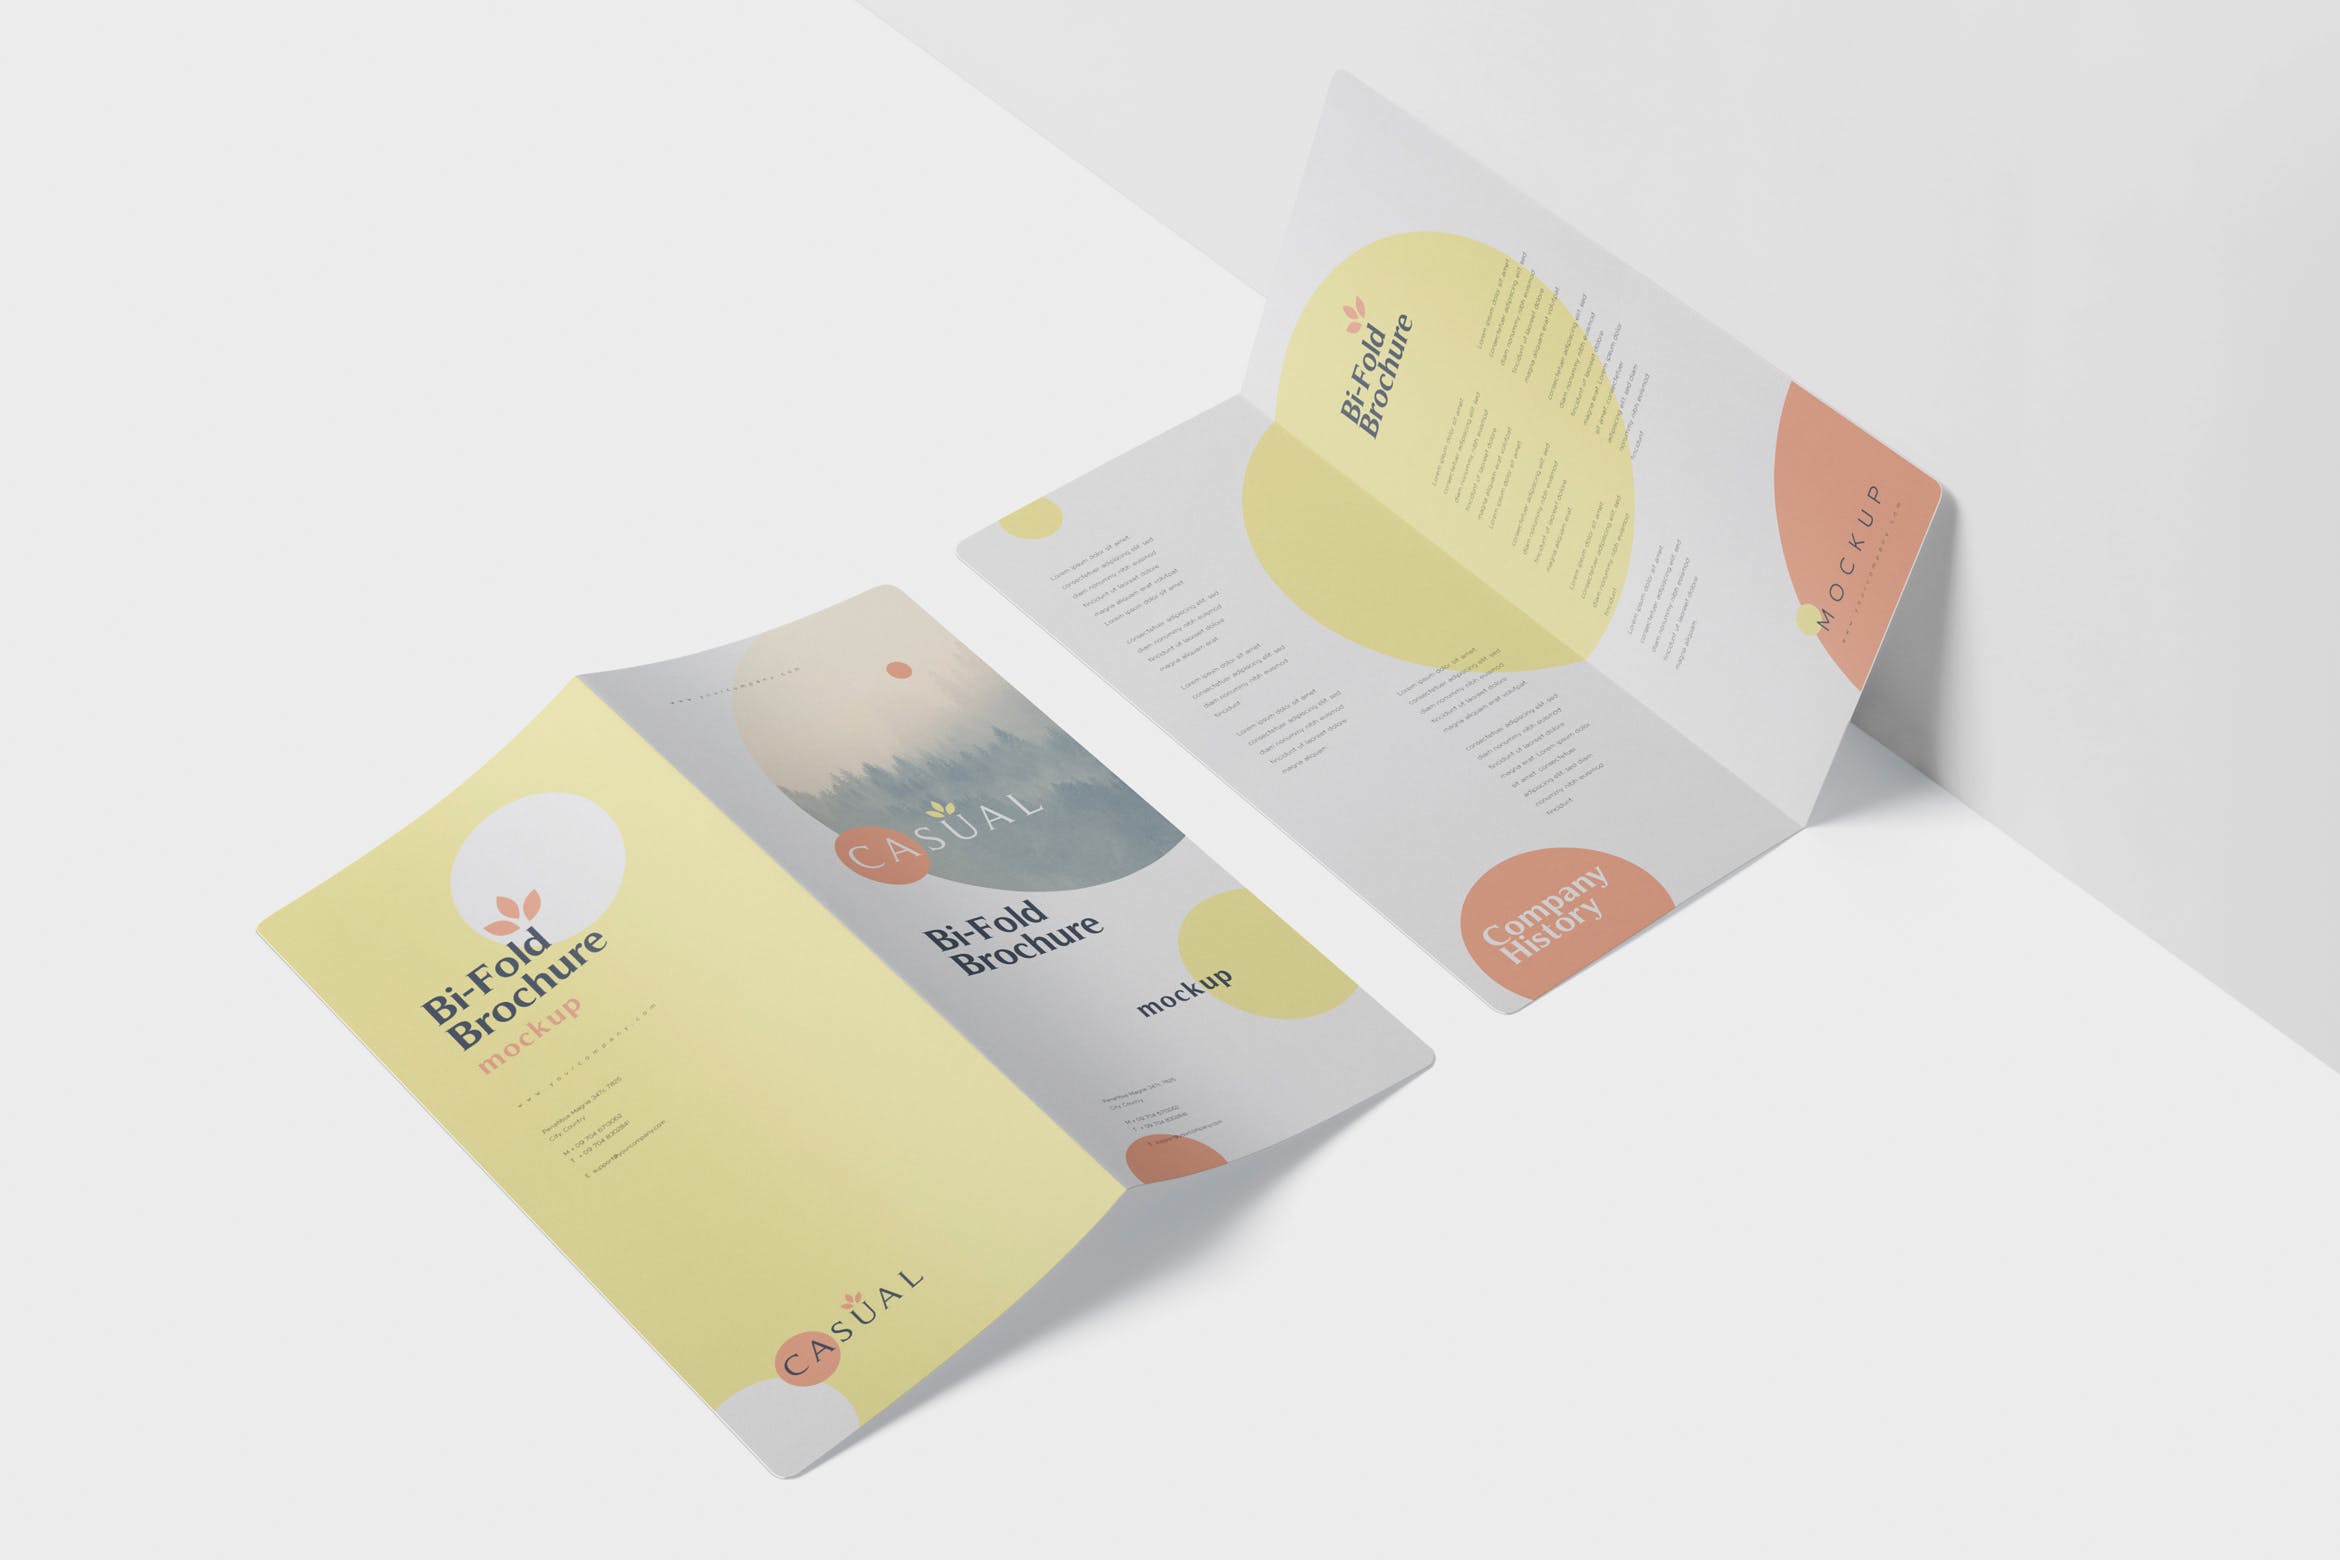 圆角设计风格对折企业传单设计样机第一素材精选 DL Bi-Fold Brochure Mock-Up Set – Round Corner插图